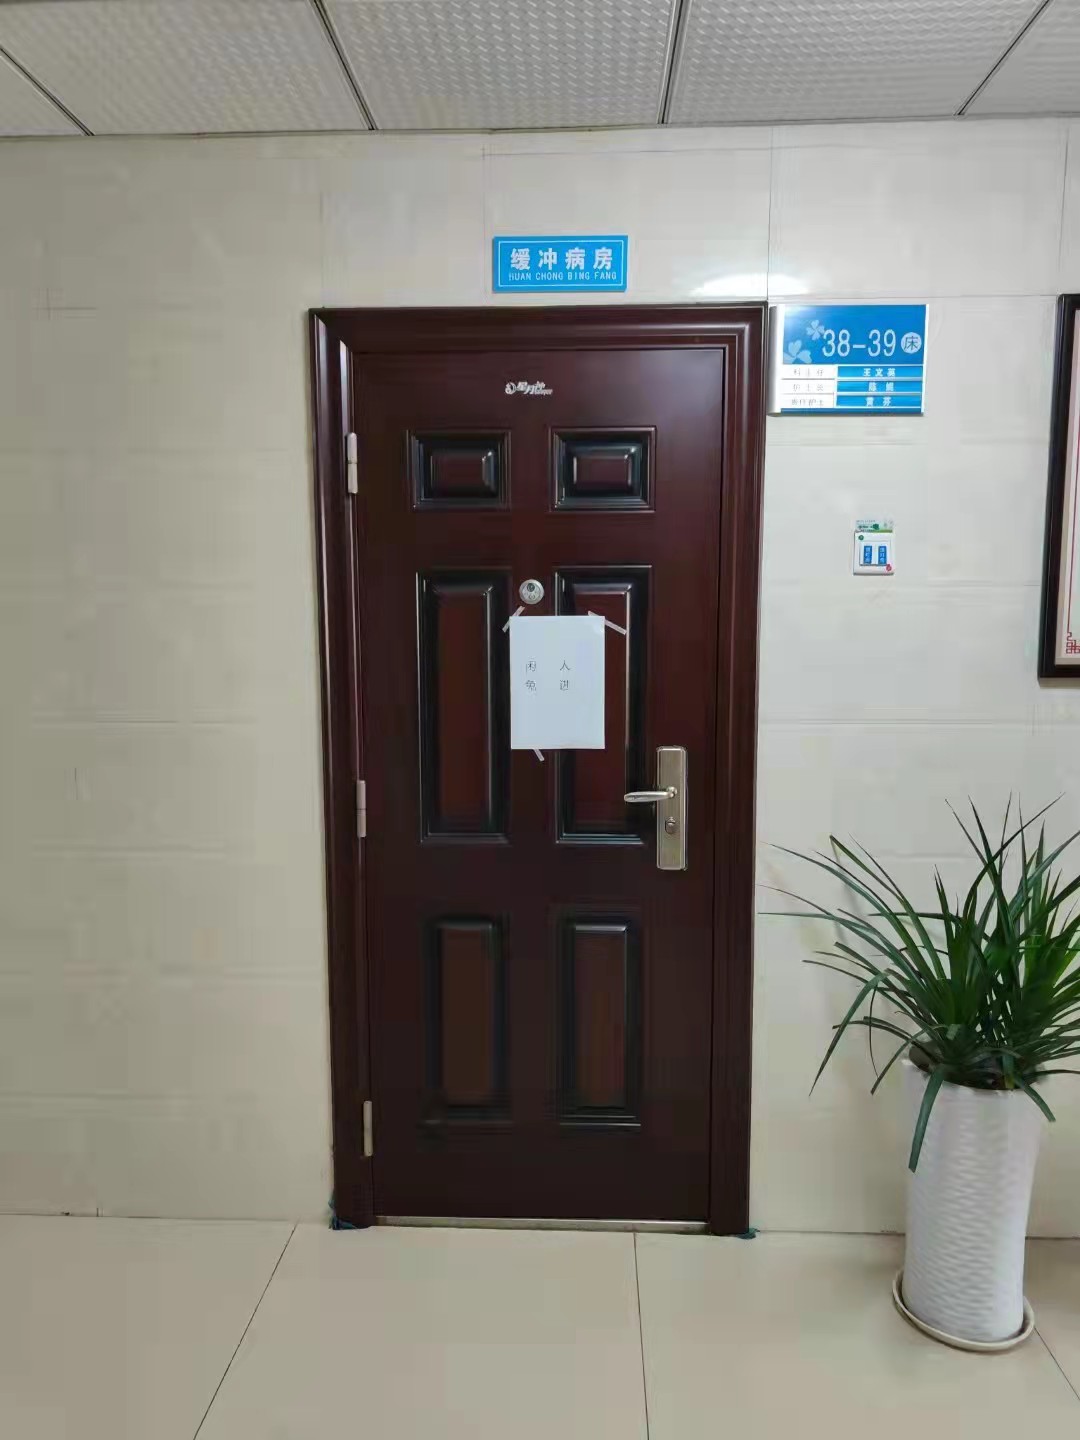 肖安（户籍名“肖训安”）供述其曾被带到沅江市中医院缓冲病房接受讯问 来源：受访者提供